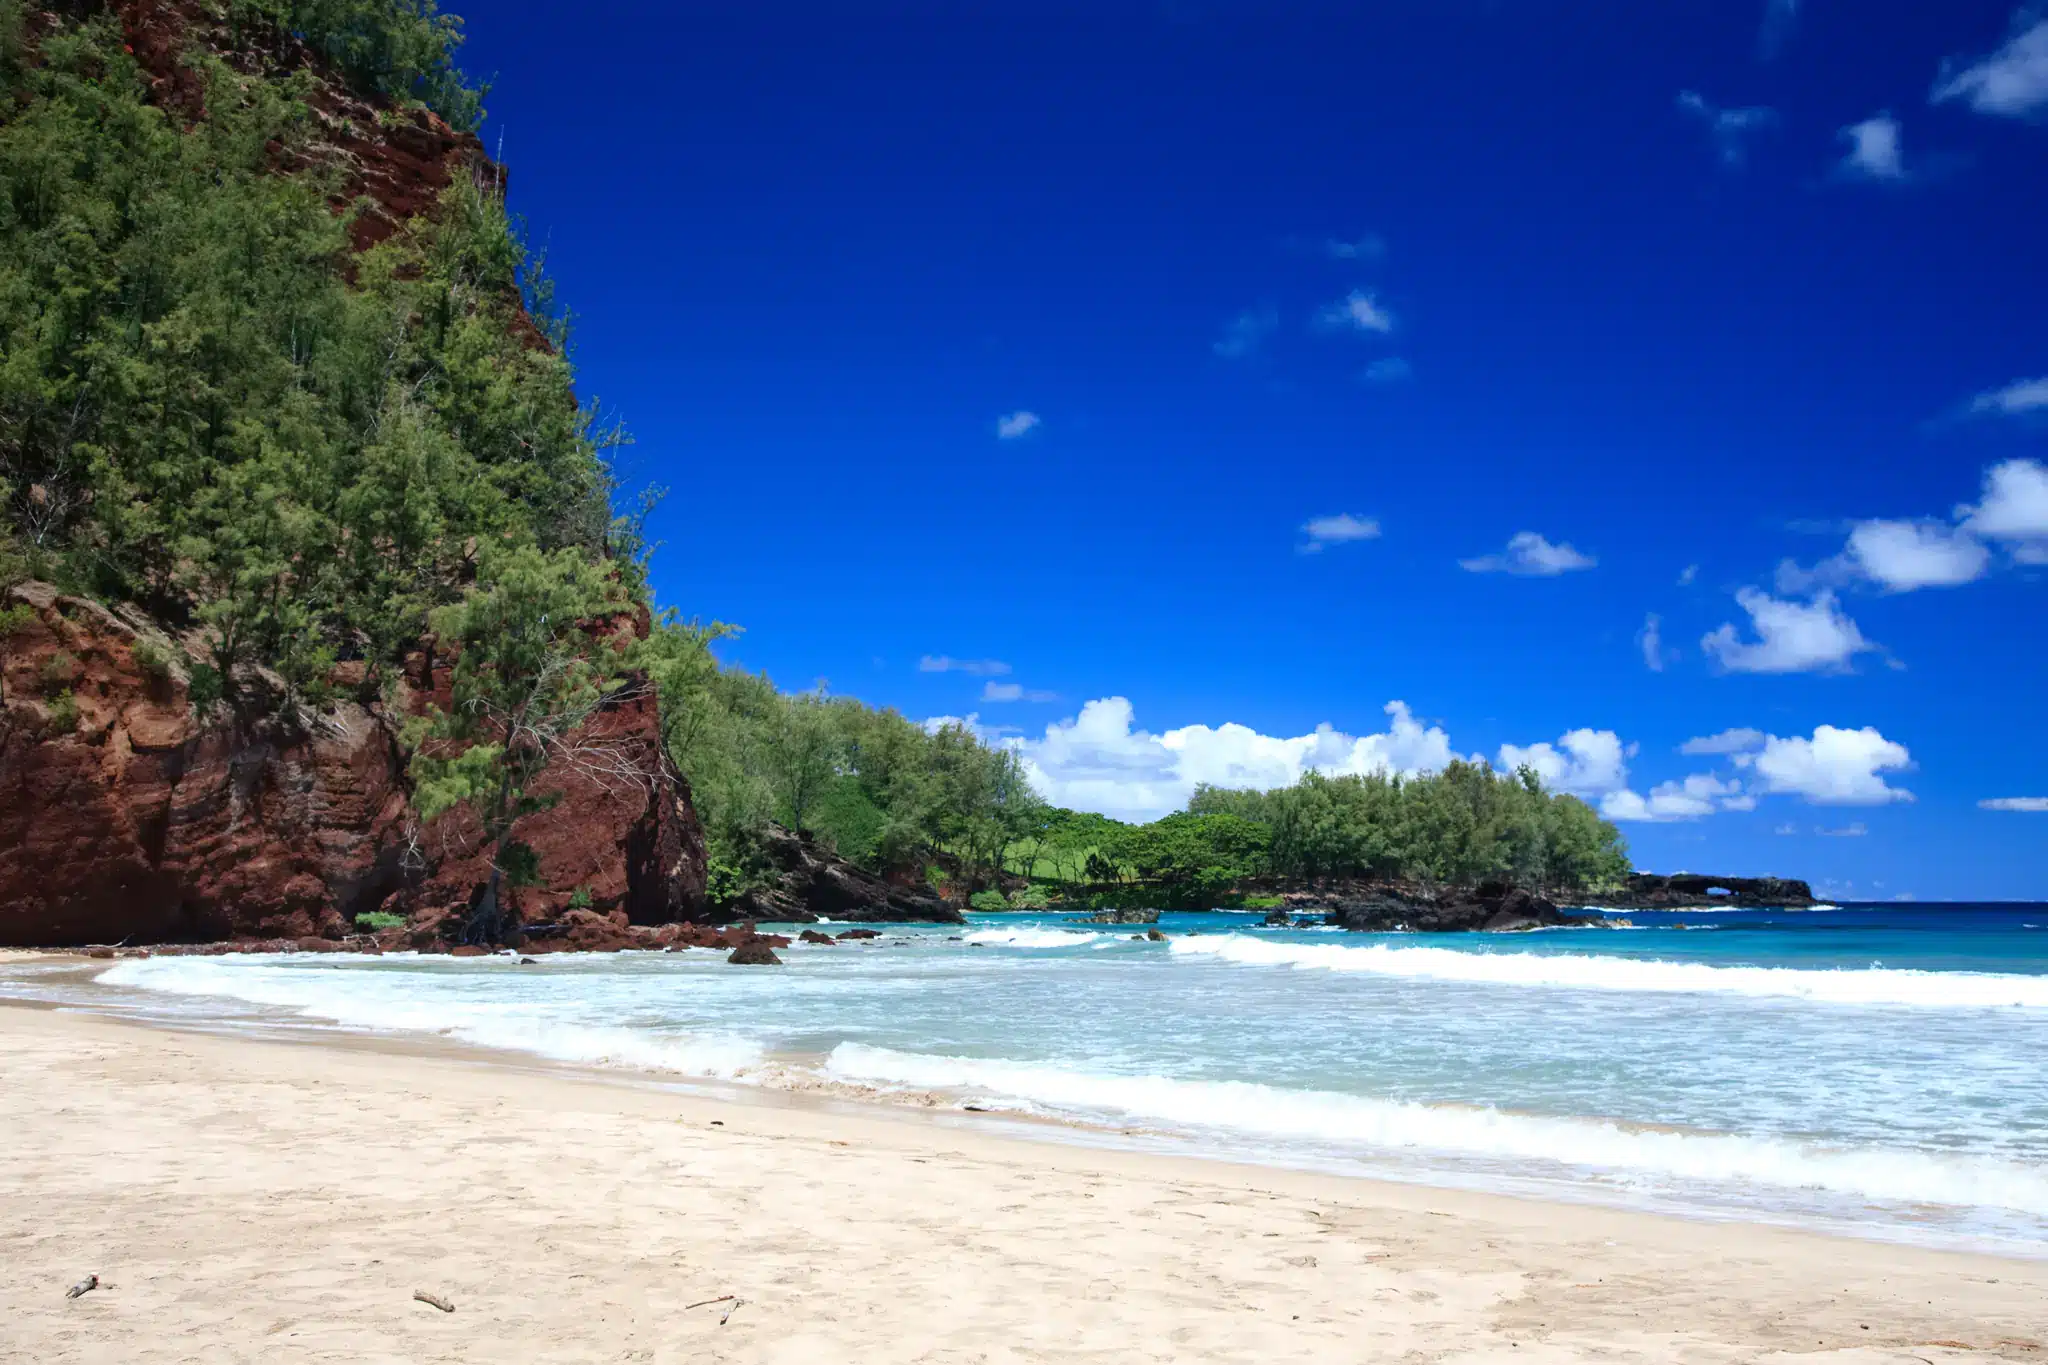 Koki Beach is a Beach located in the city of Hana on Maui, Hawaii